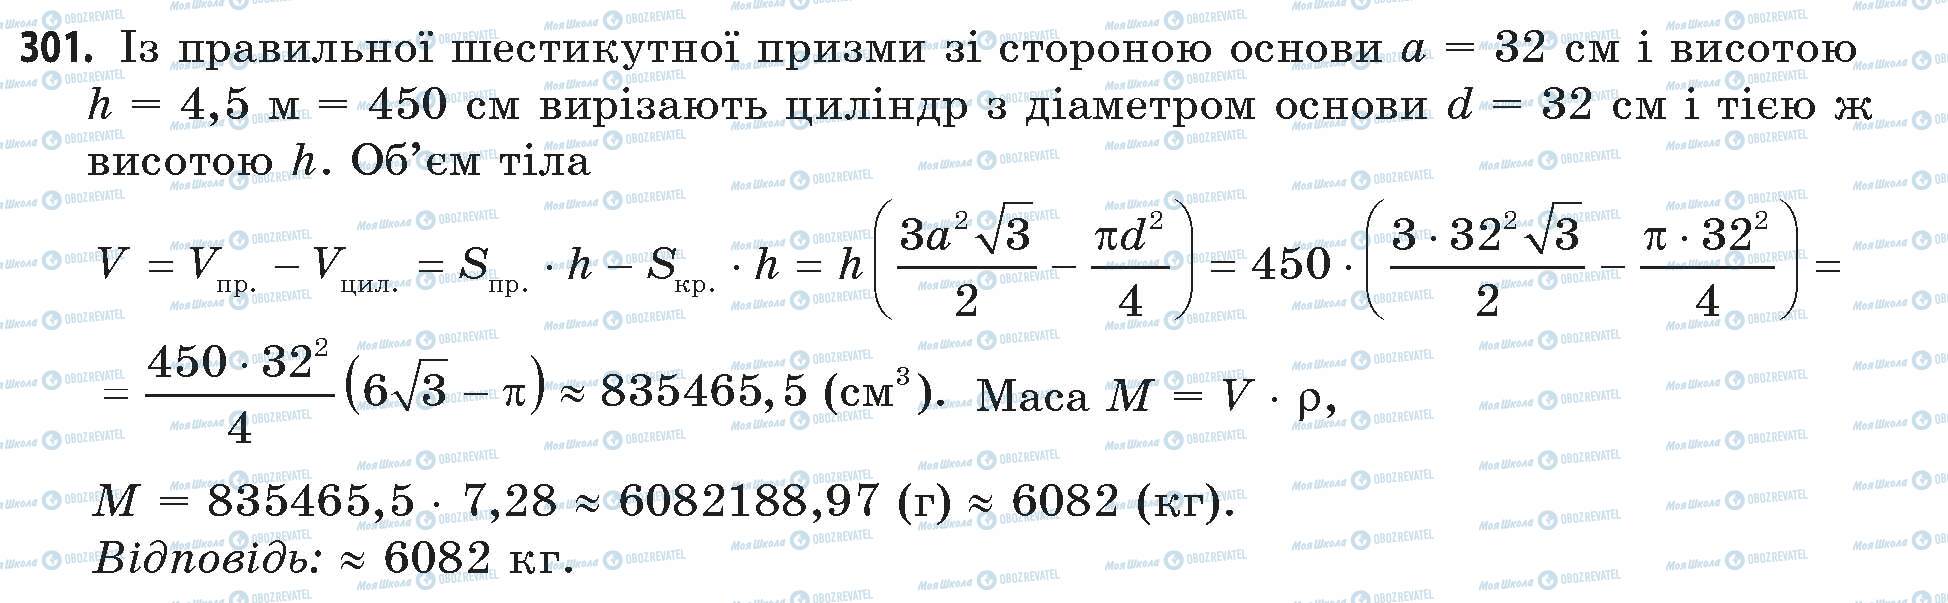 ГДЗ Математика 11 класс страница 301